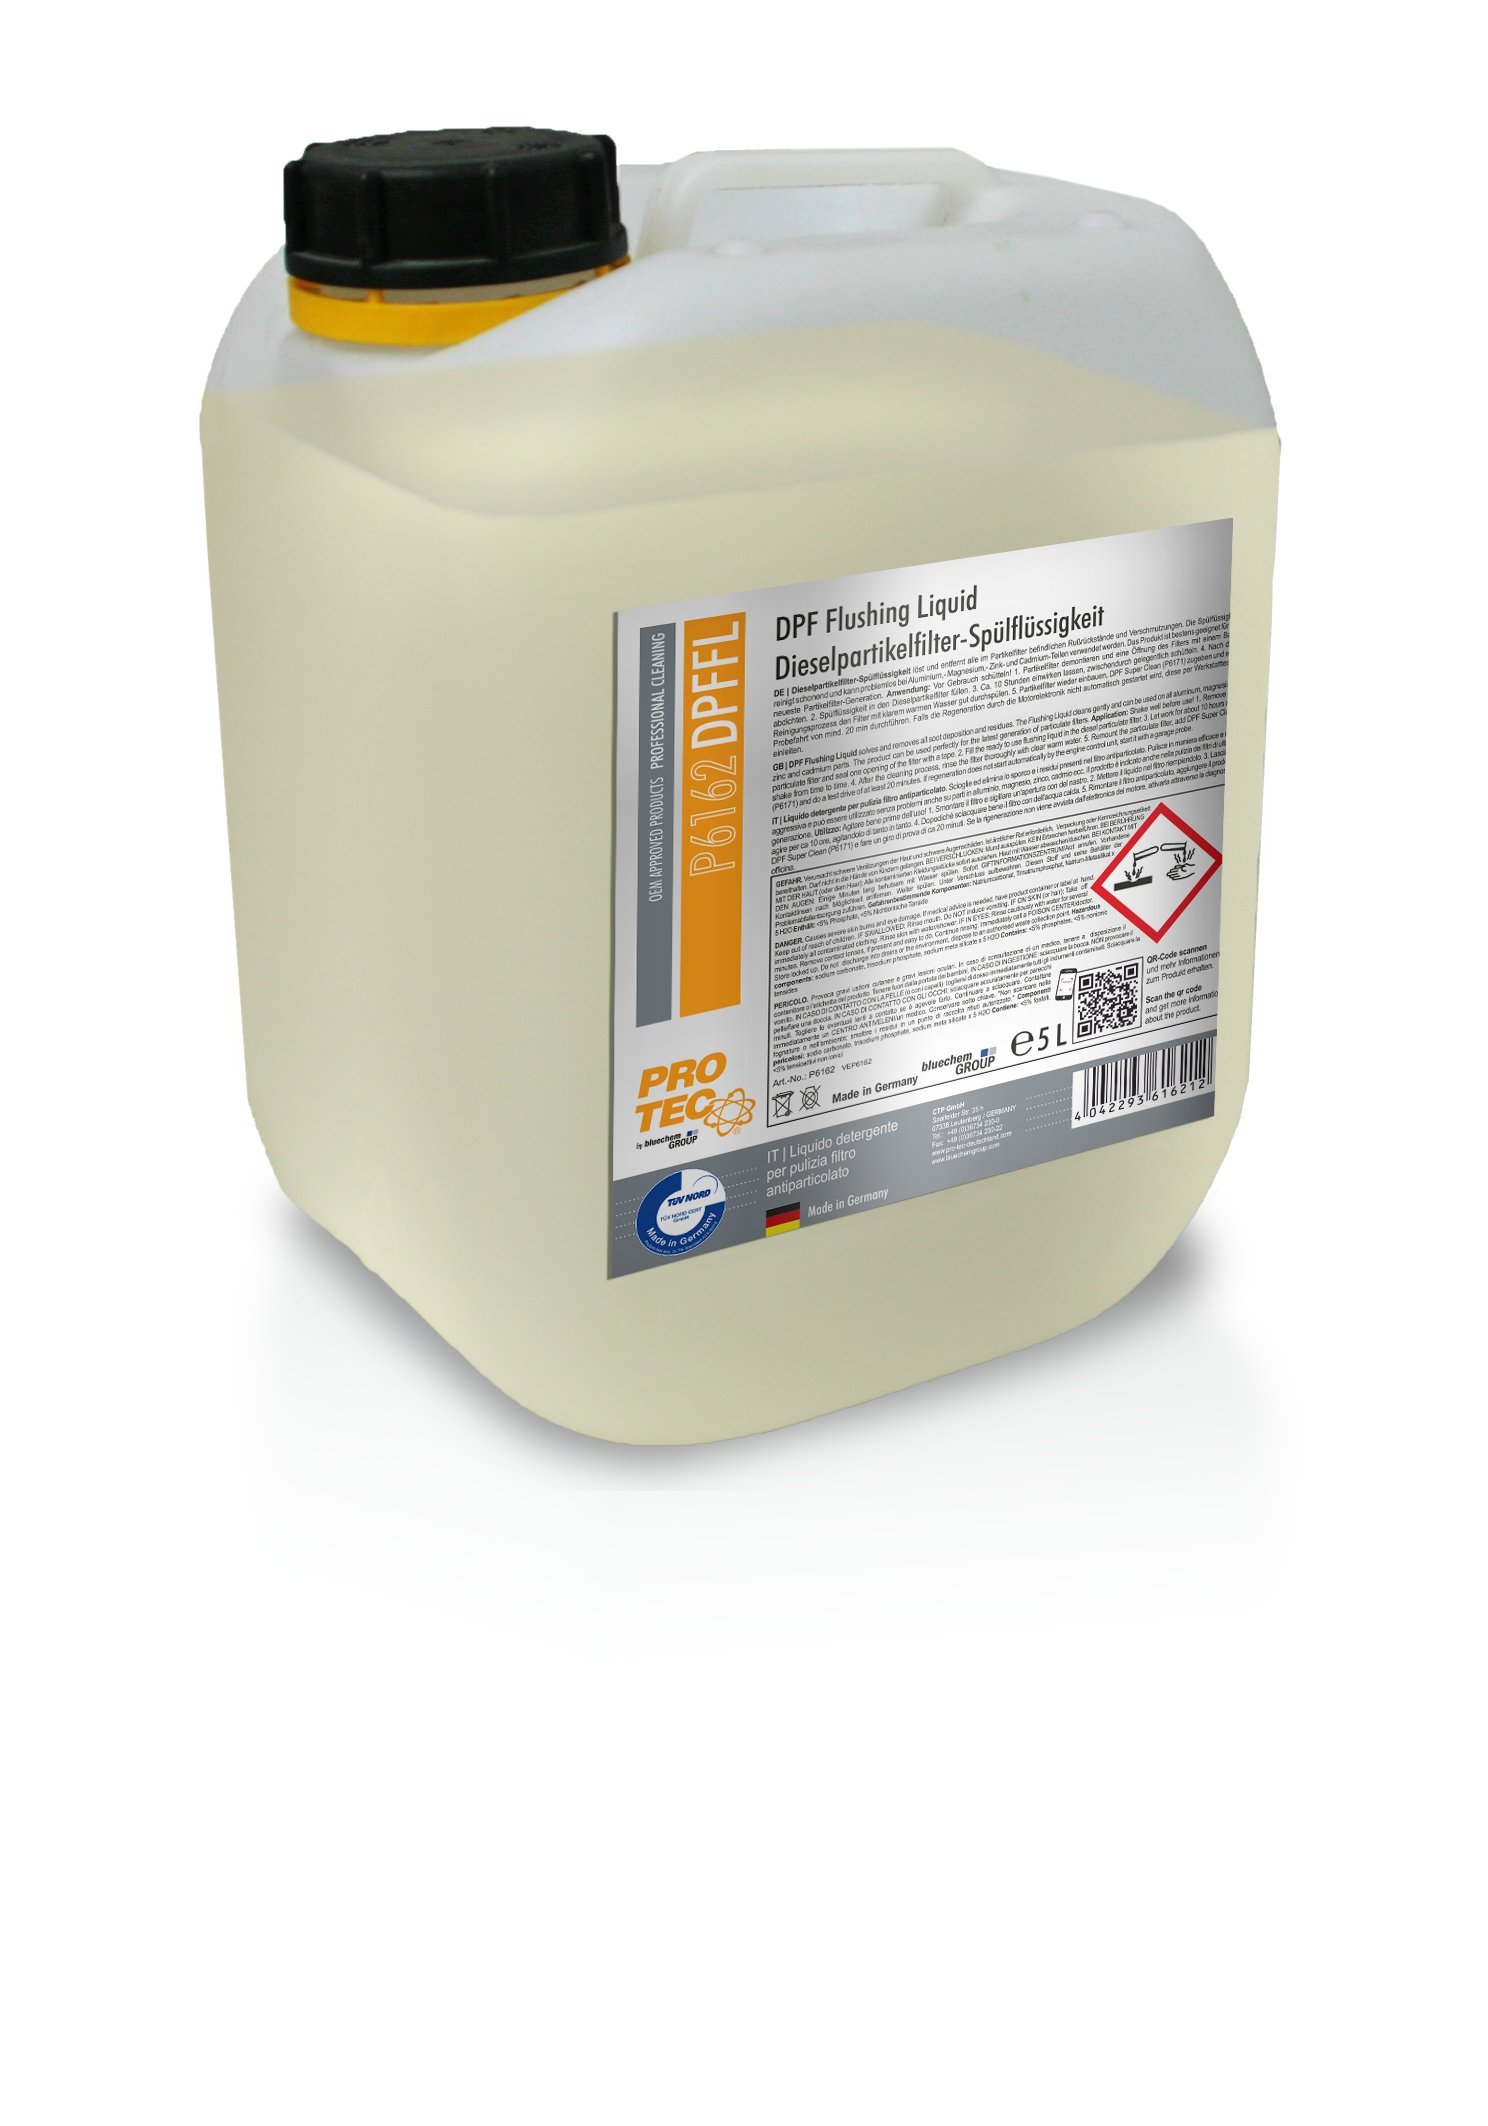 5L PROTEC DPF Flushing Liquid Dieselpartikelfilter-Spülflüssigkeit Reiniger von Protec